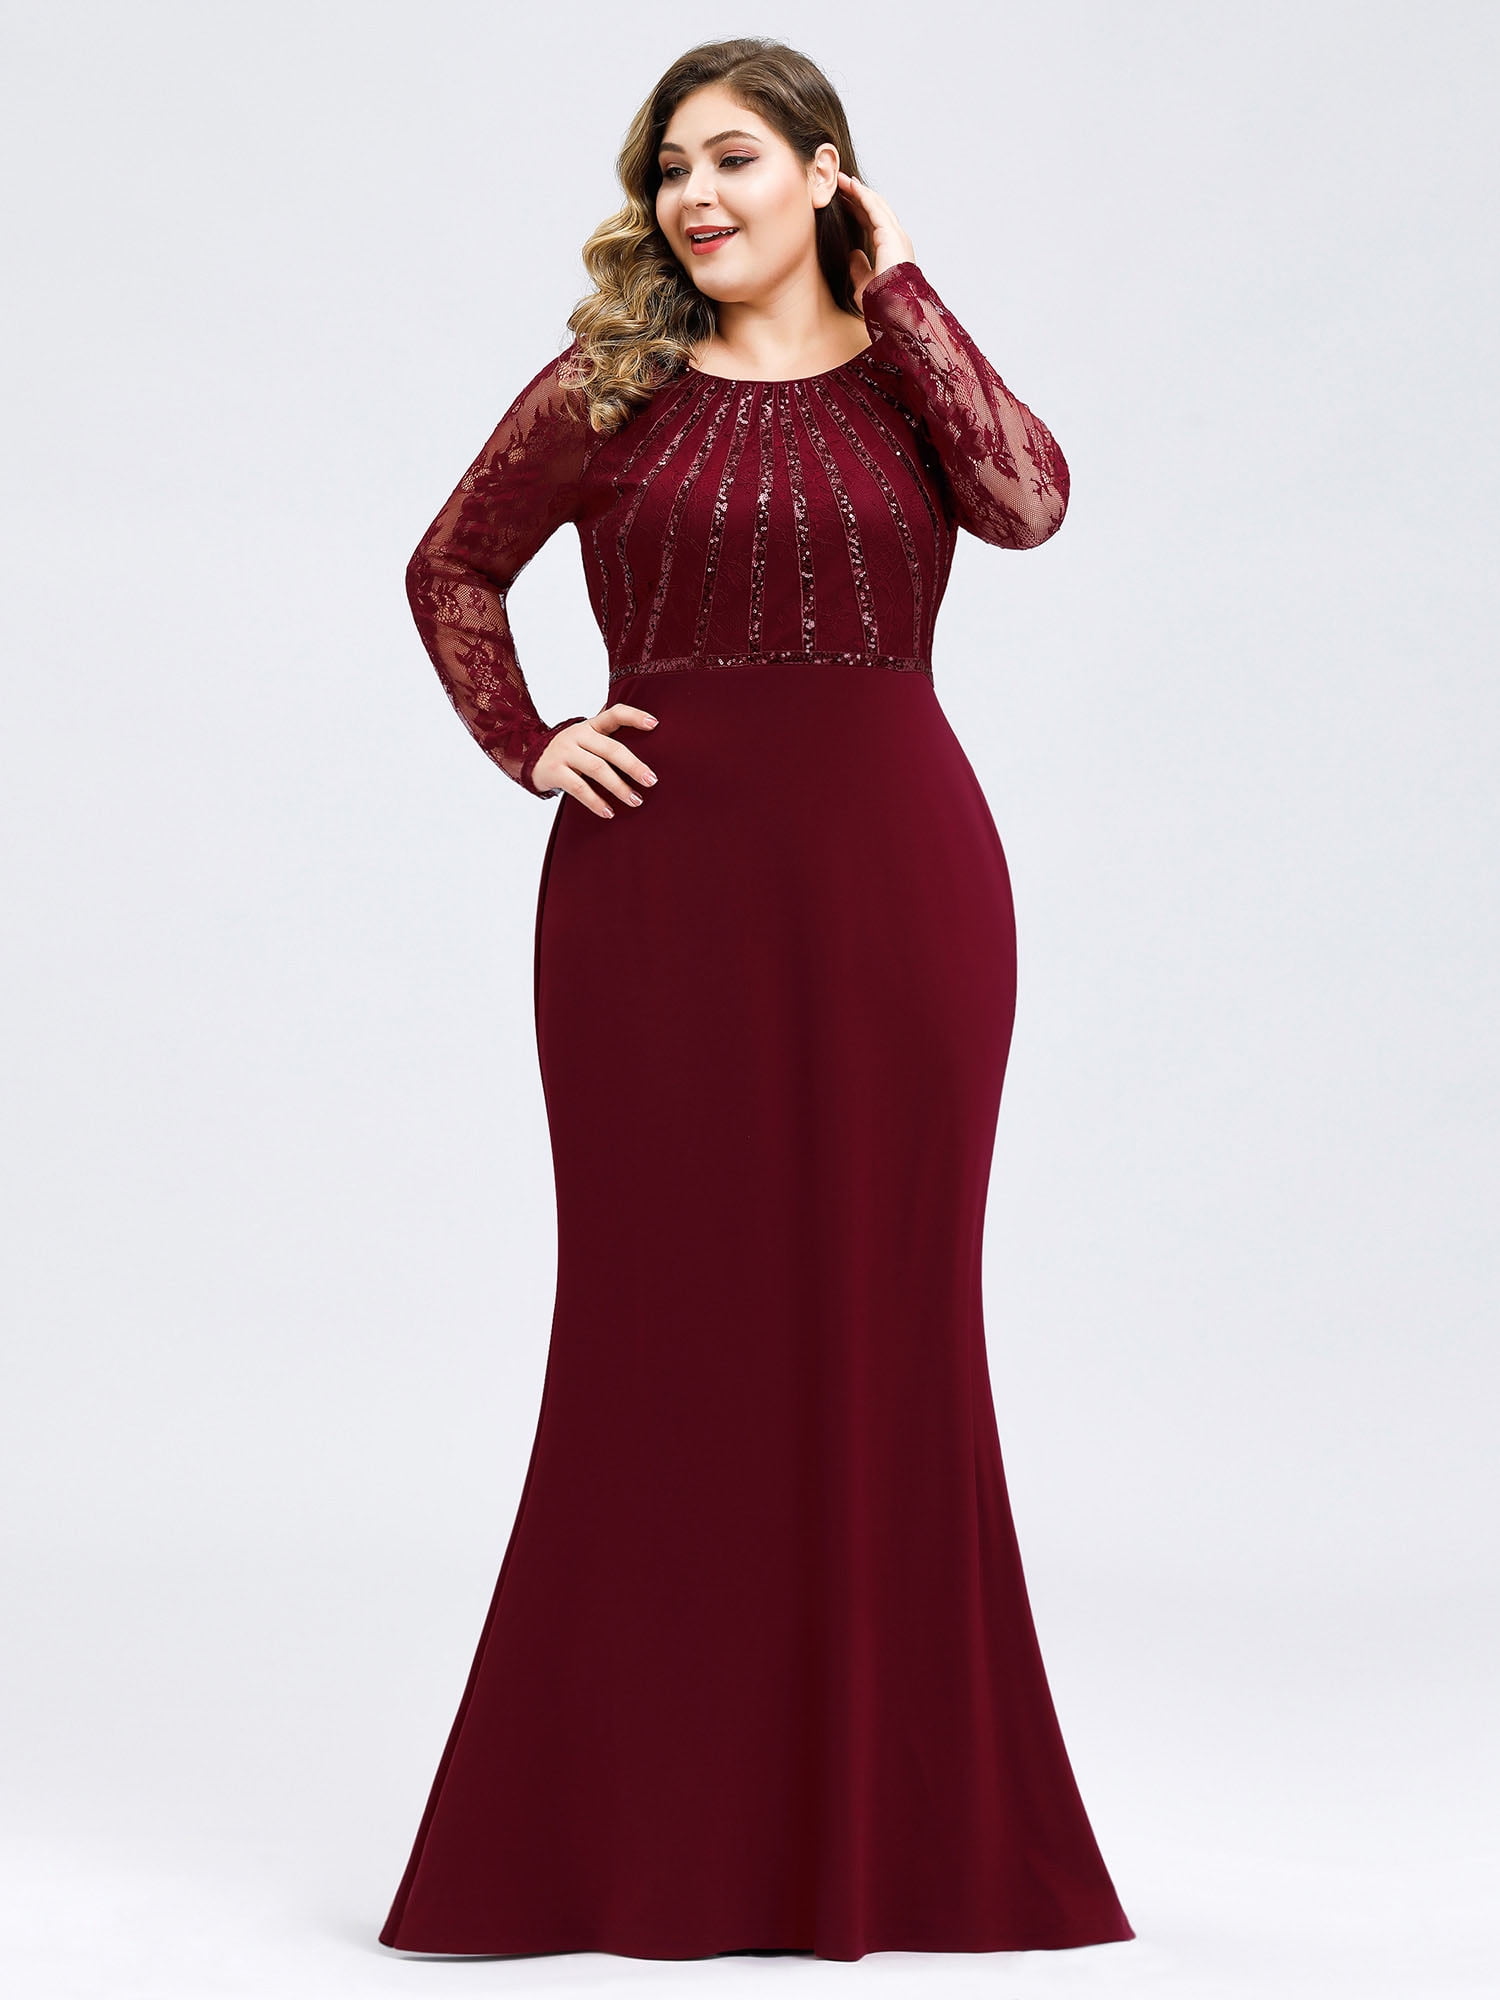 women's plus size burgundy dress